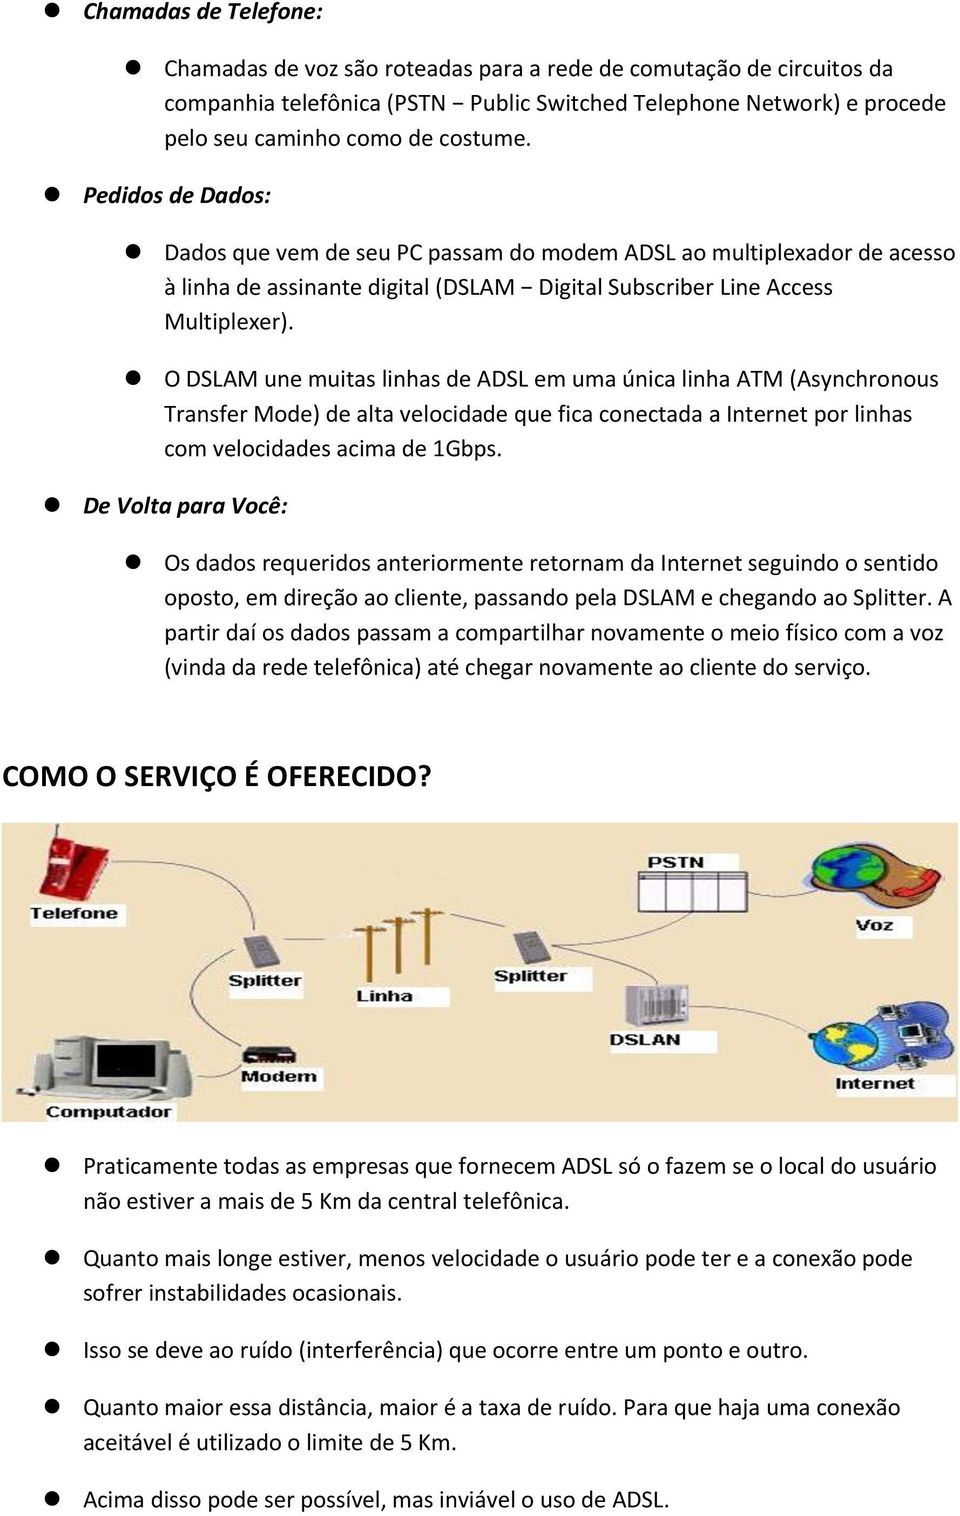 O DSLAM une muitas linhas de ADSL em uma única linha ATM (Asynchronous Transfer Mode) de alta velocidade que fica conectada a Internet por linhas com velocidades acima de 1Gbps.